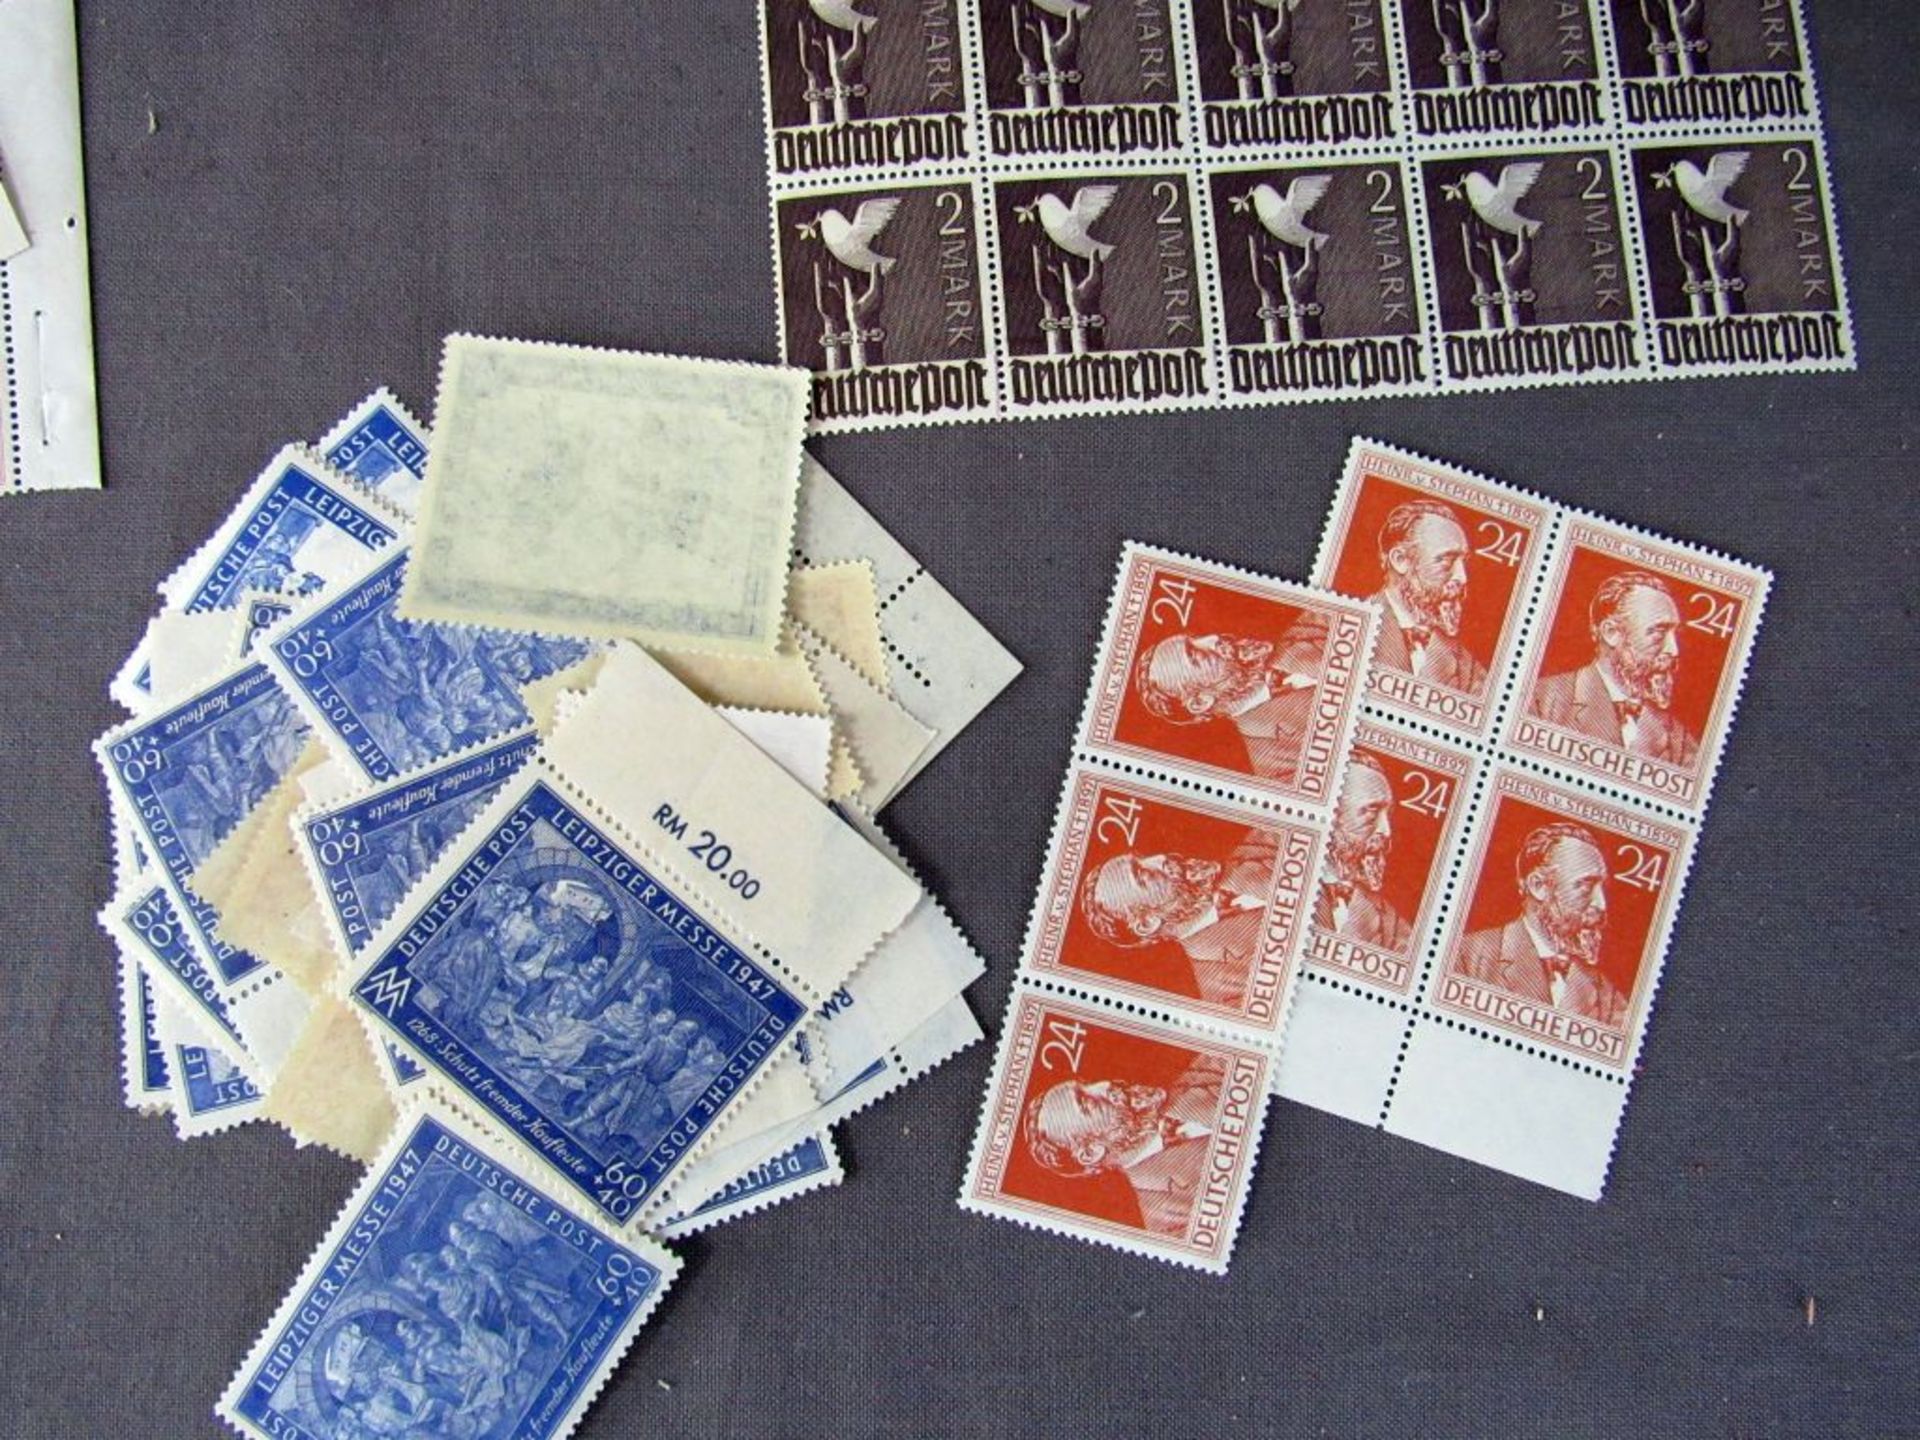 Briefmarken zwei Dosen SBZ postfrisch - Image 2 of 7